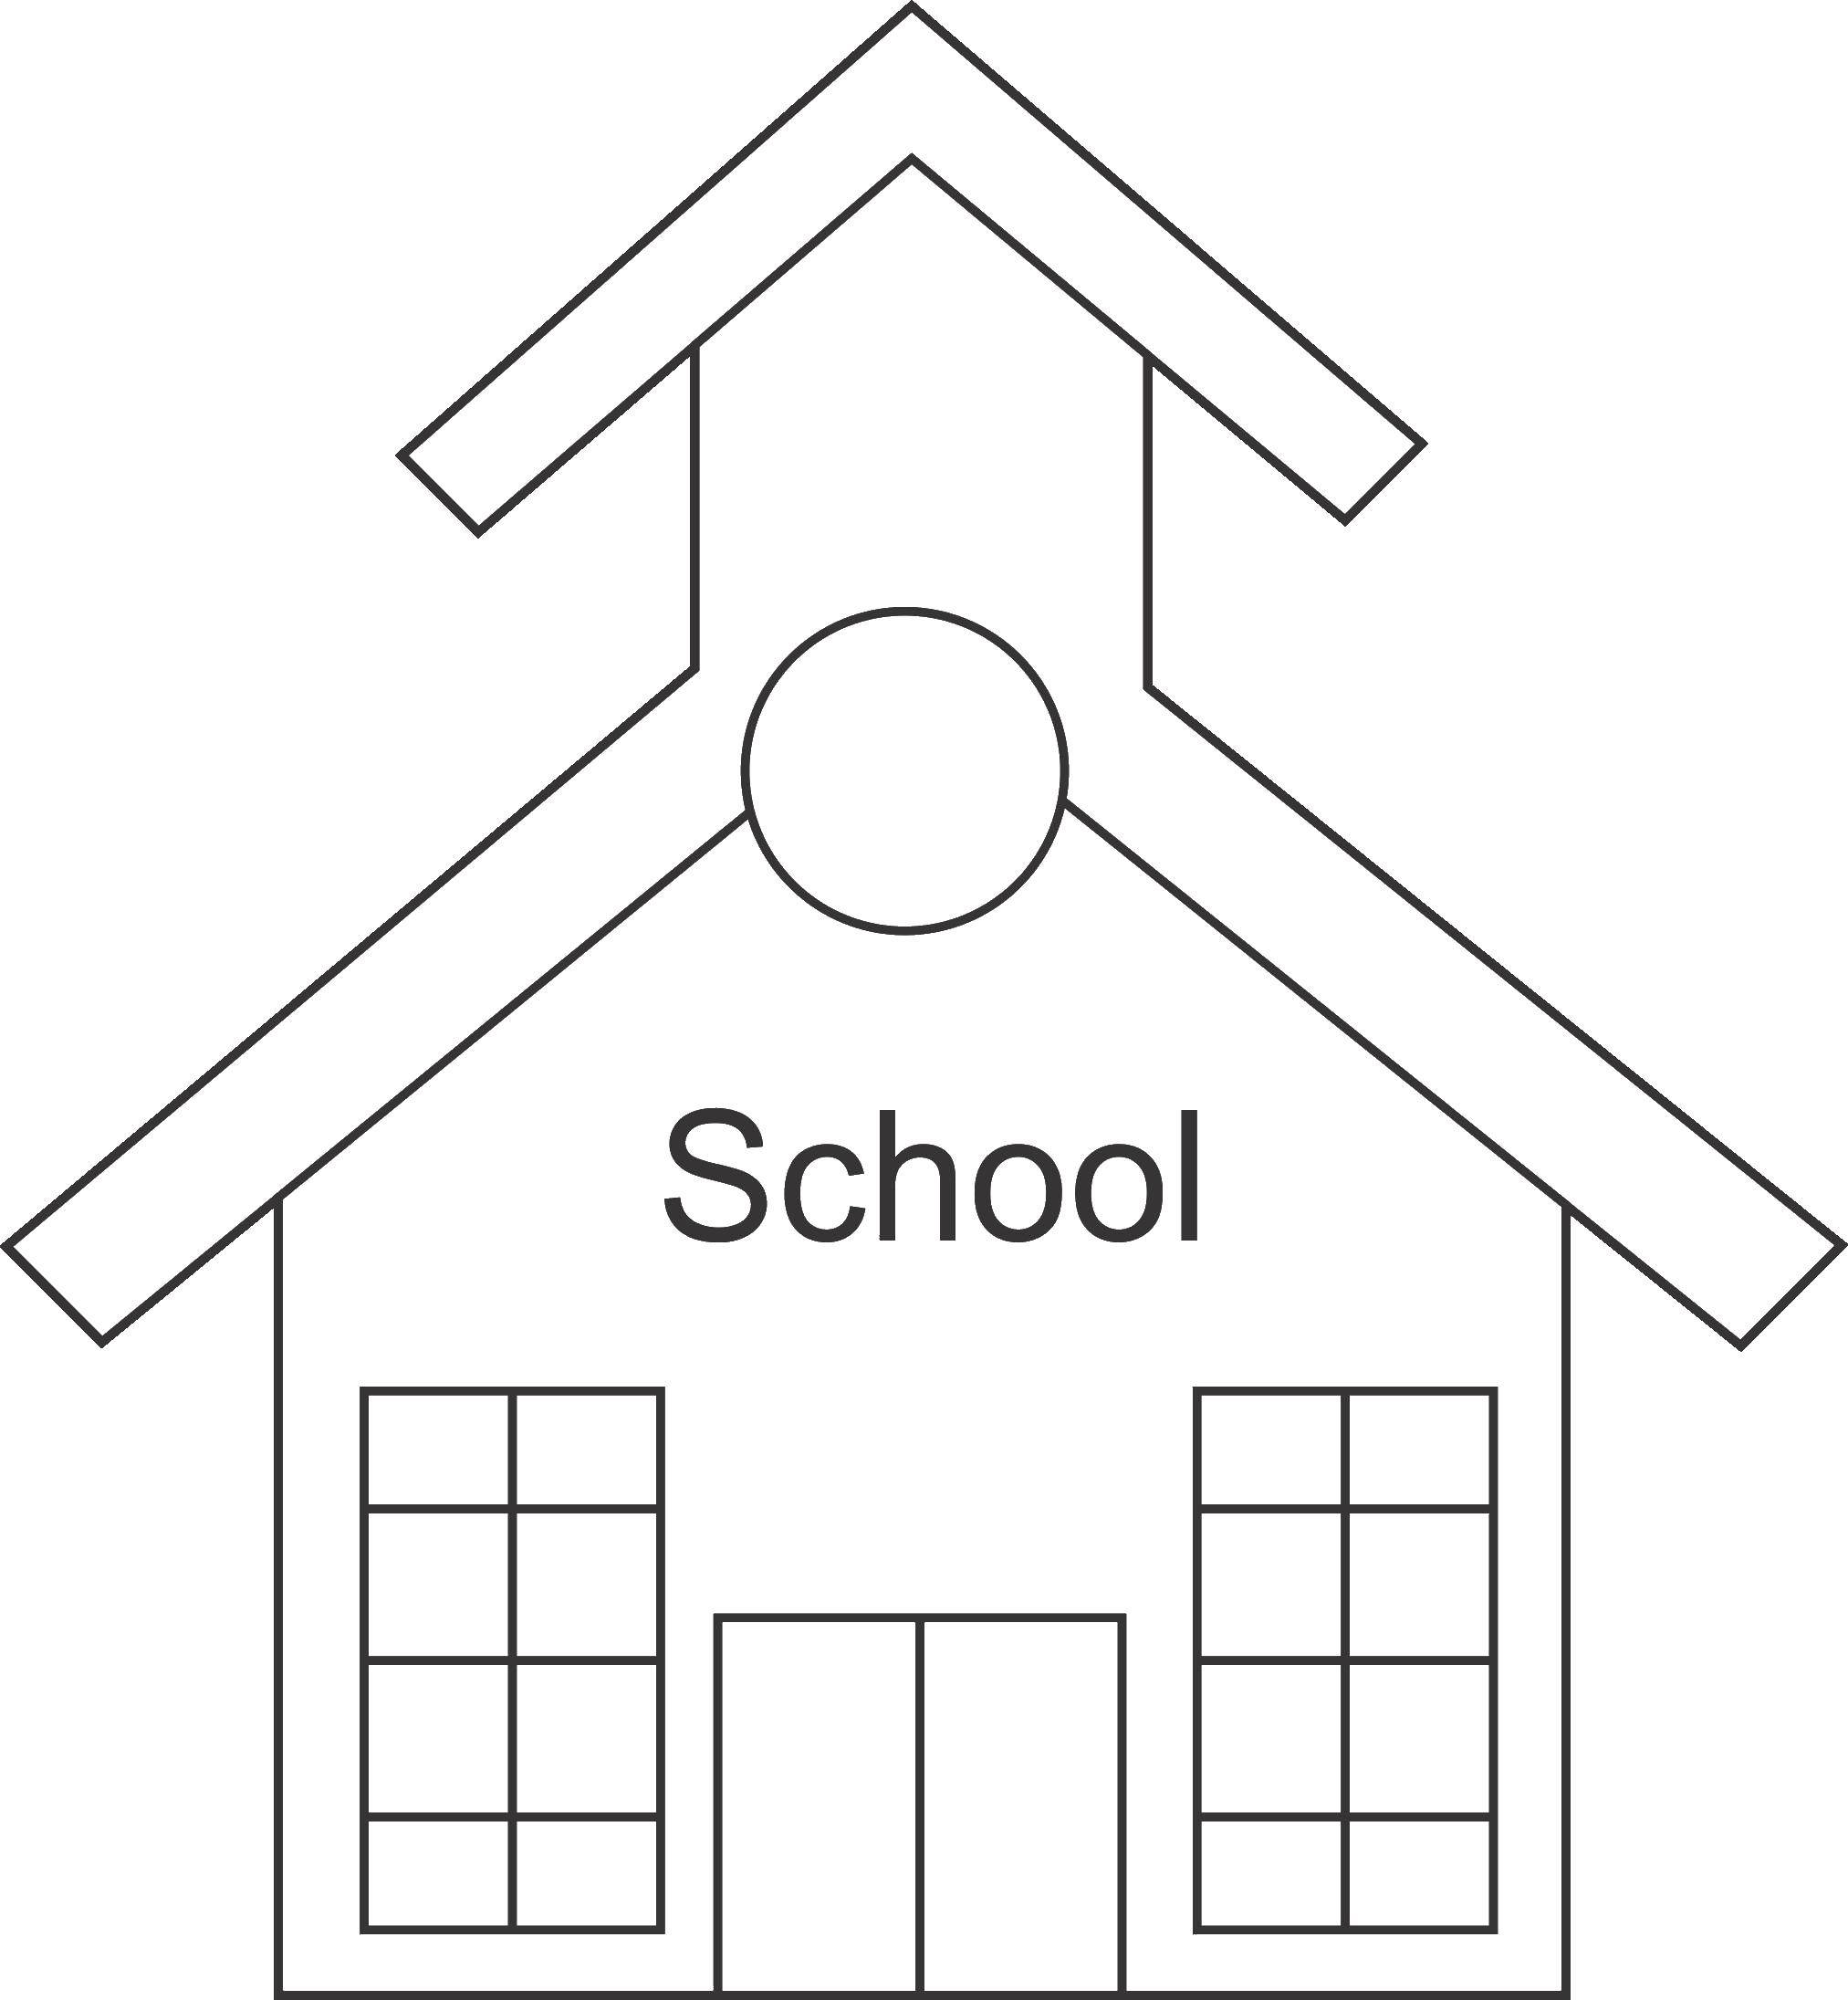 Название: Раскраска Школьное здание. Категория: школа. Теги: Школа, класс, урок, дети.